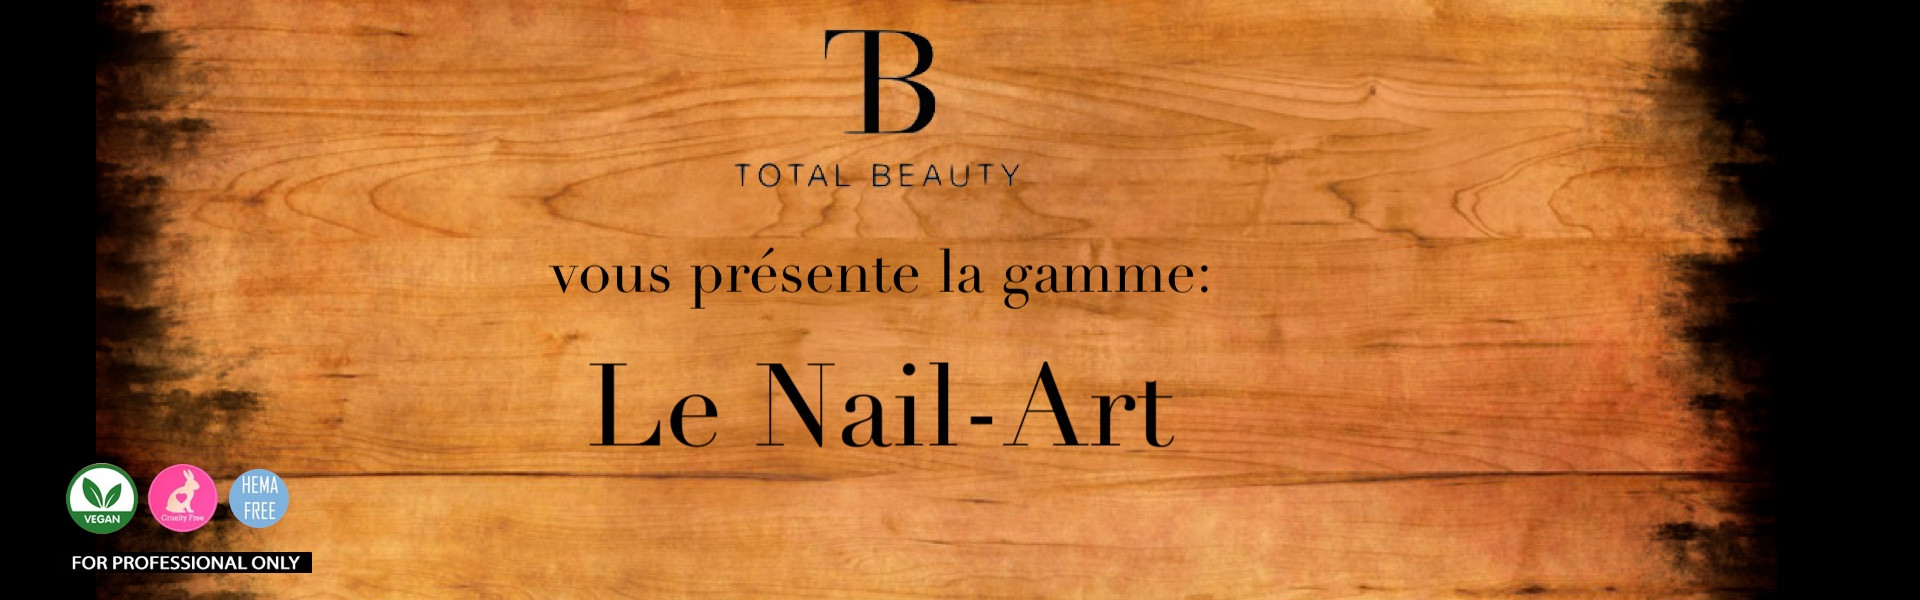 Le Nail-Art